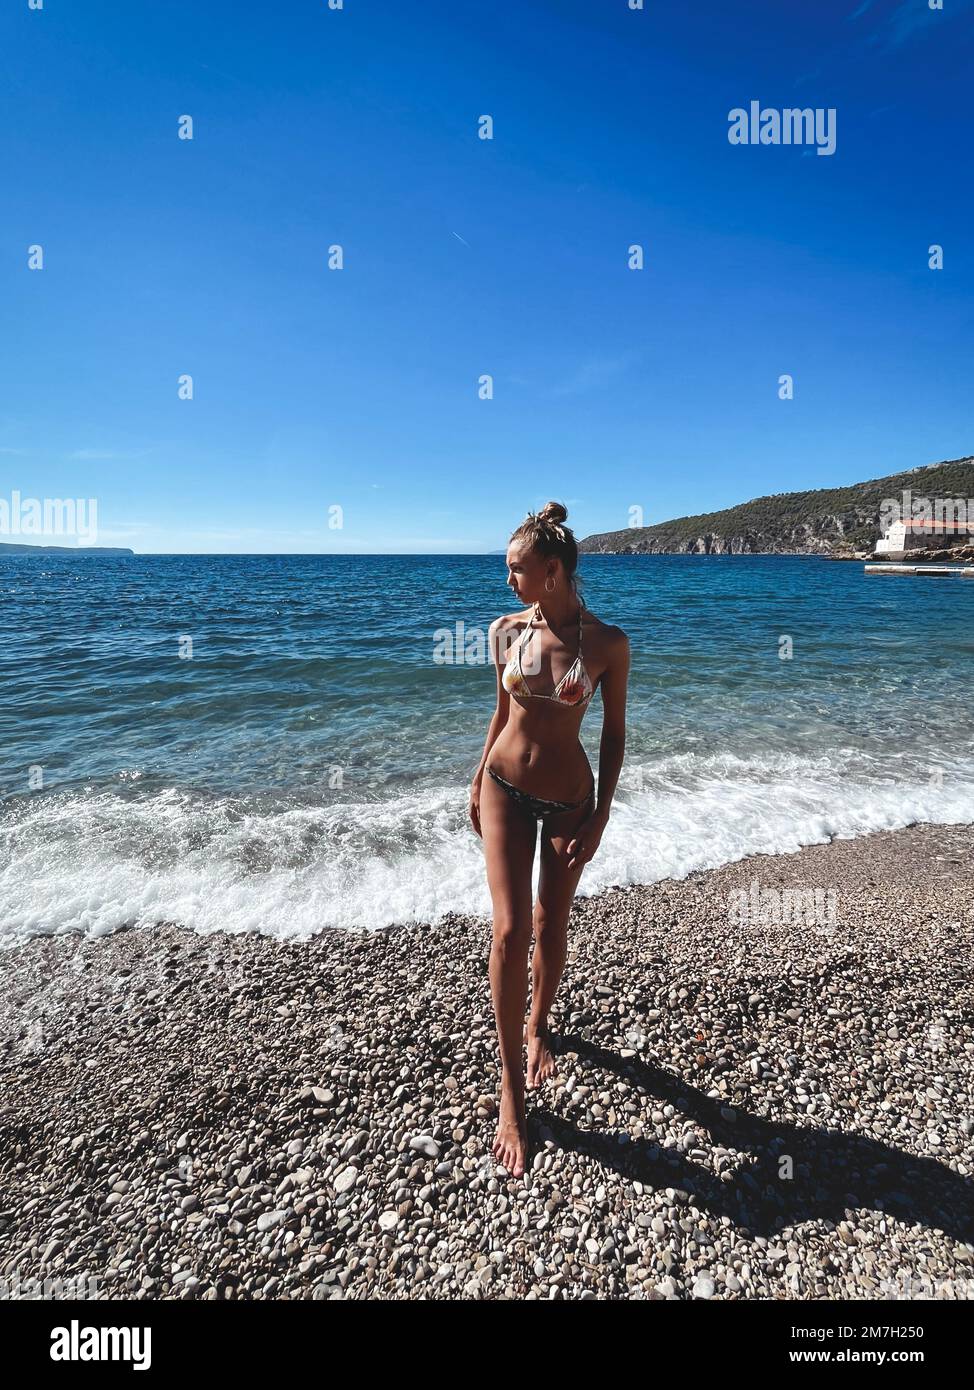 Hermosa modelo alta en traje de baño en la costa rocosa contra el fondo del mar y las islas distantes. Foto de stock